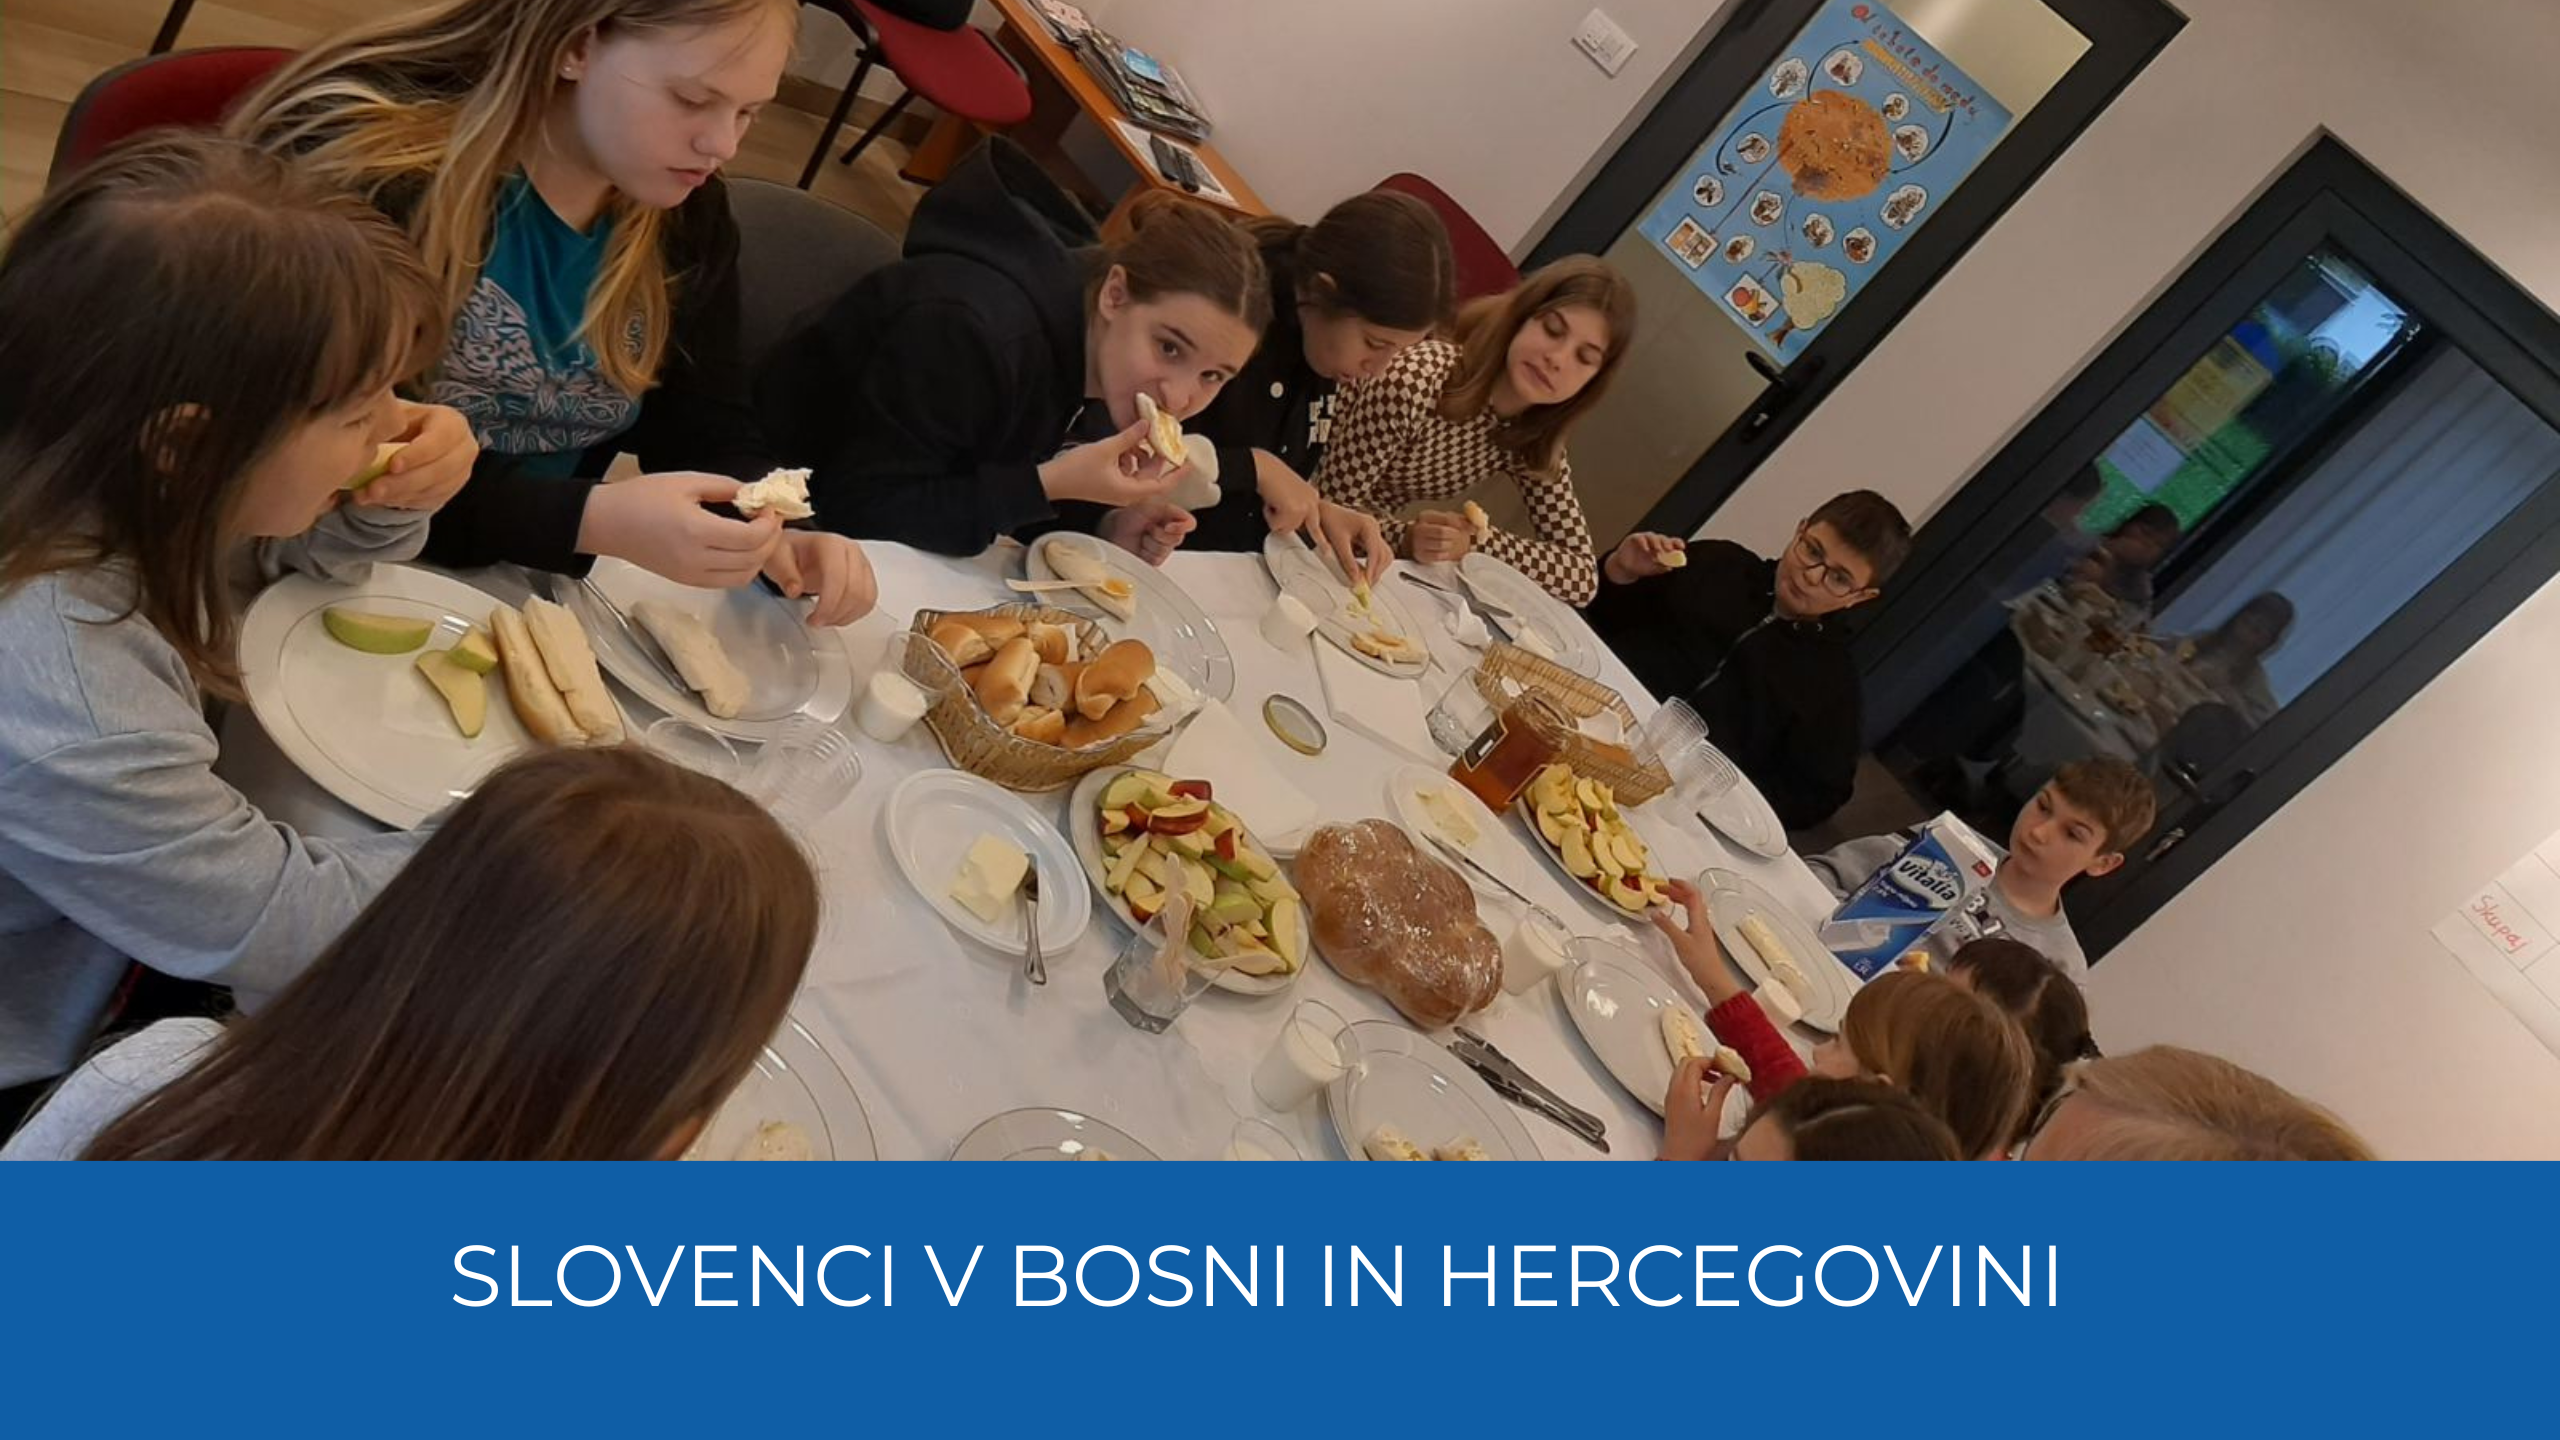 Otroci za obloženo mizo, jedo med na kruhu. Spodaj moder trak, na njem bel napis Slovenci v Bosni in Hercegovini.